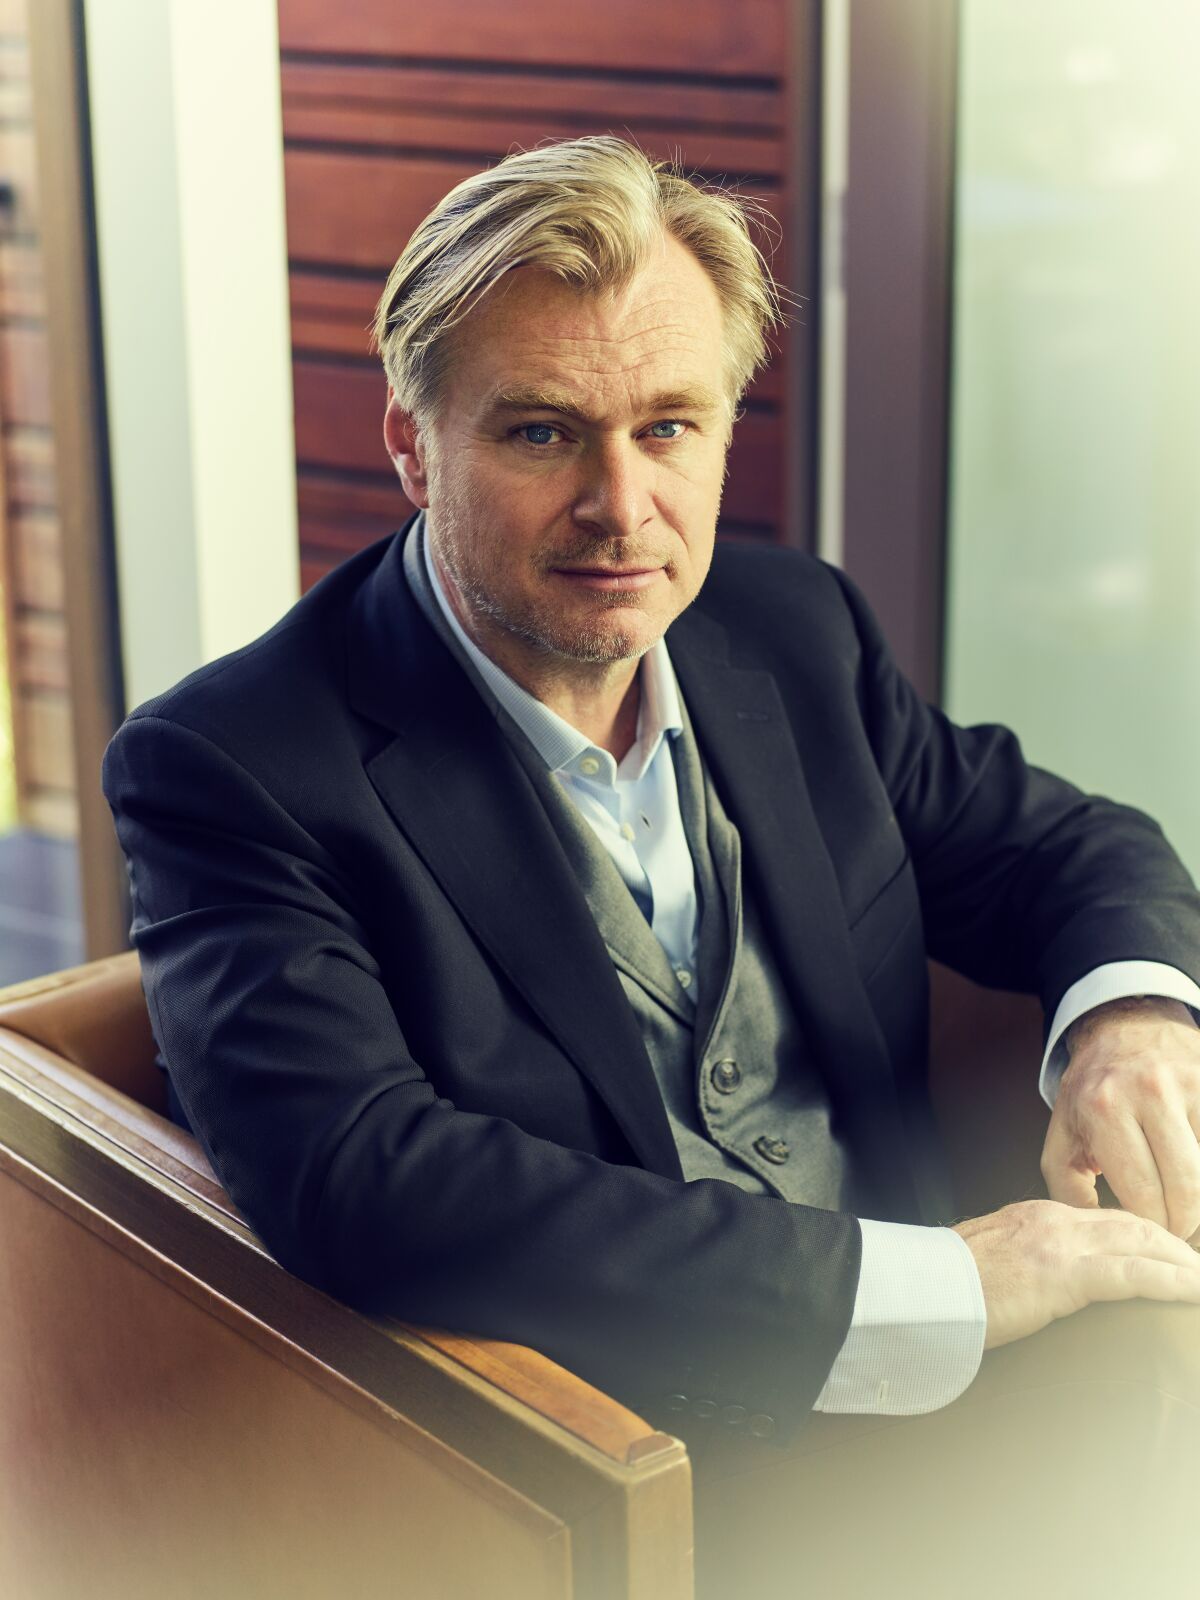 Christopher Nolan là một nam đạo diễn, biên kịch, doanh nhân kiêm nhà sản xuất điện ảnh người Mỹ gốc Anh